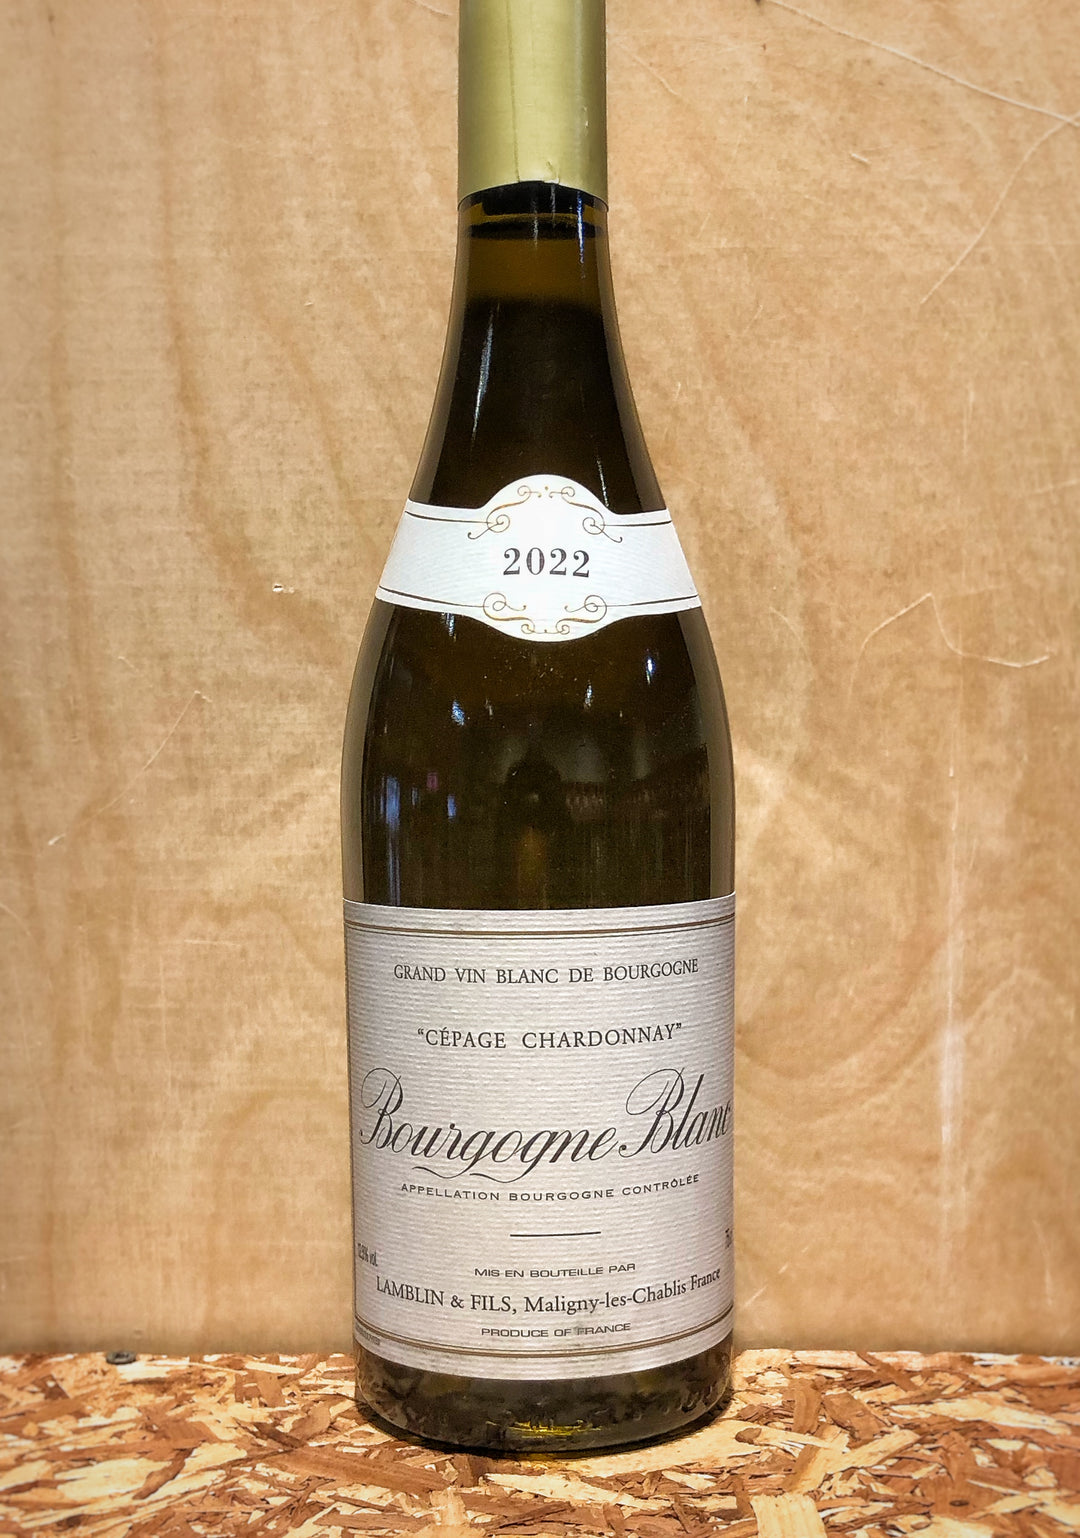 Lamblin et Fils 'Cepage Chardonnay' Bourgogne Blanc 2022 (Burgundy, France)